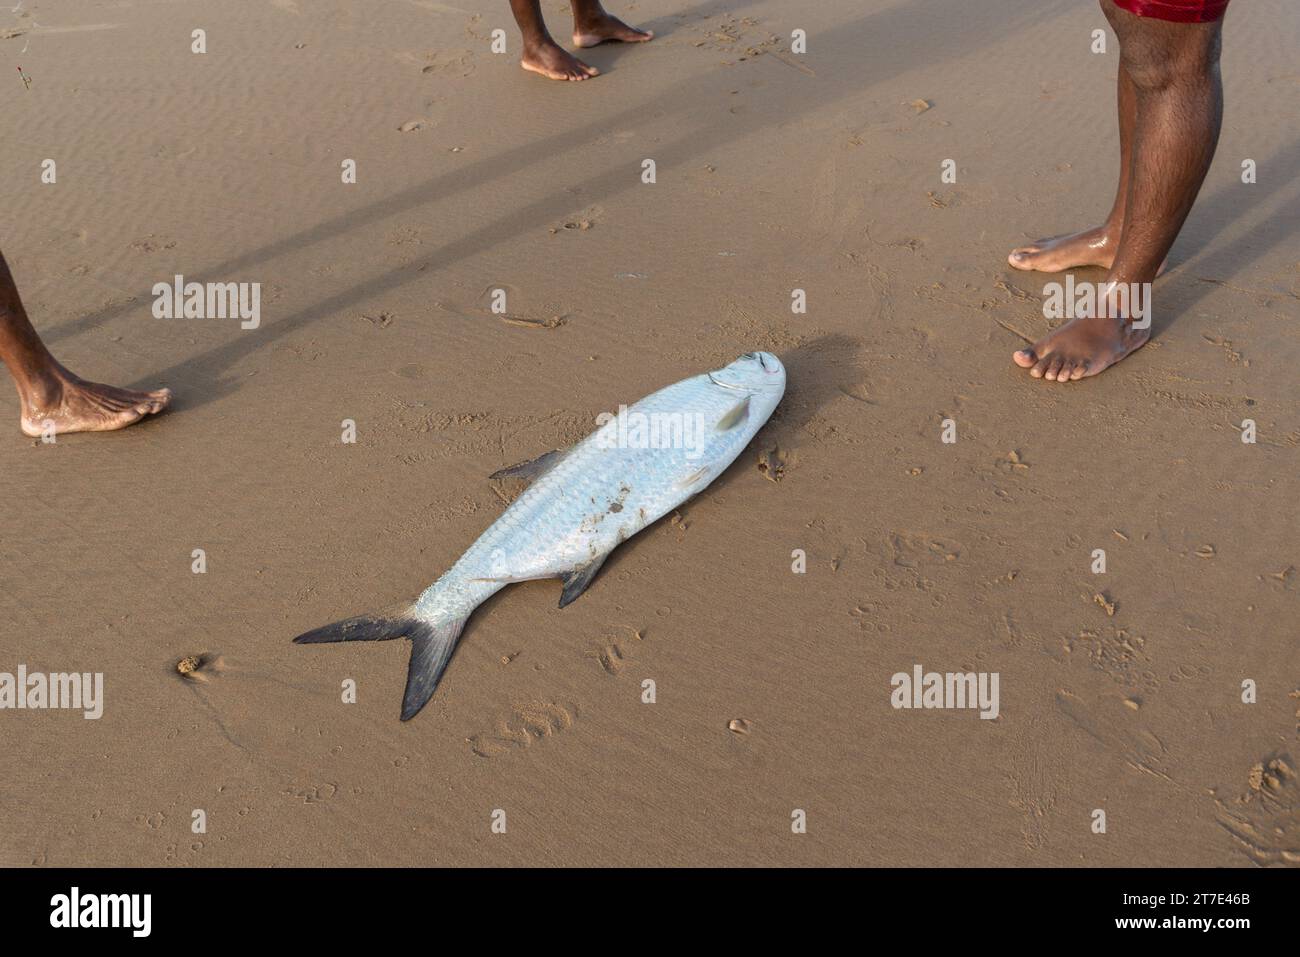 Salvador, Bahia, Brasilien - 26. April 2019: Tarponfisch, Megalops atlanticus, im Strandsand, von Fischern gefangen. Meeresfrüchte. Stockfoto